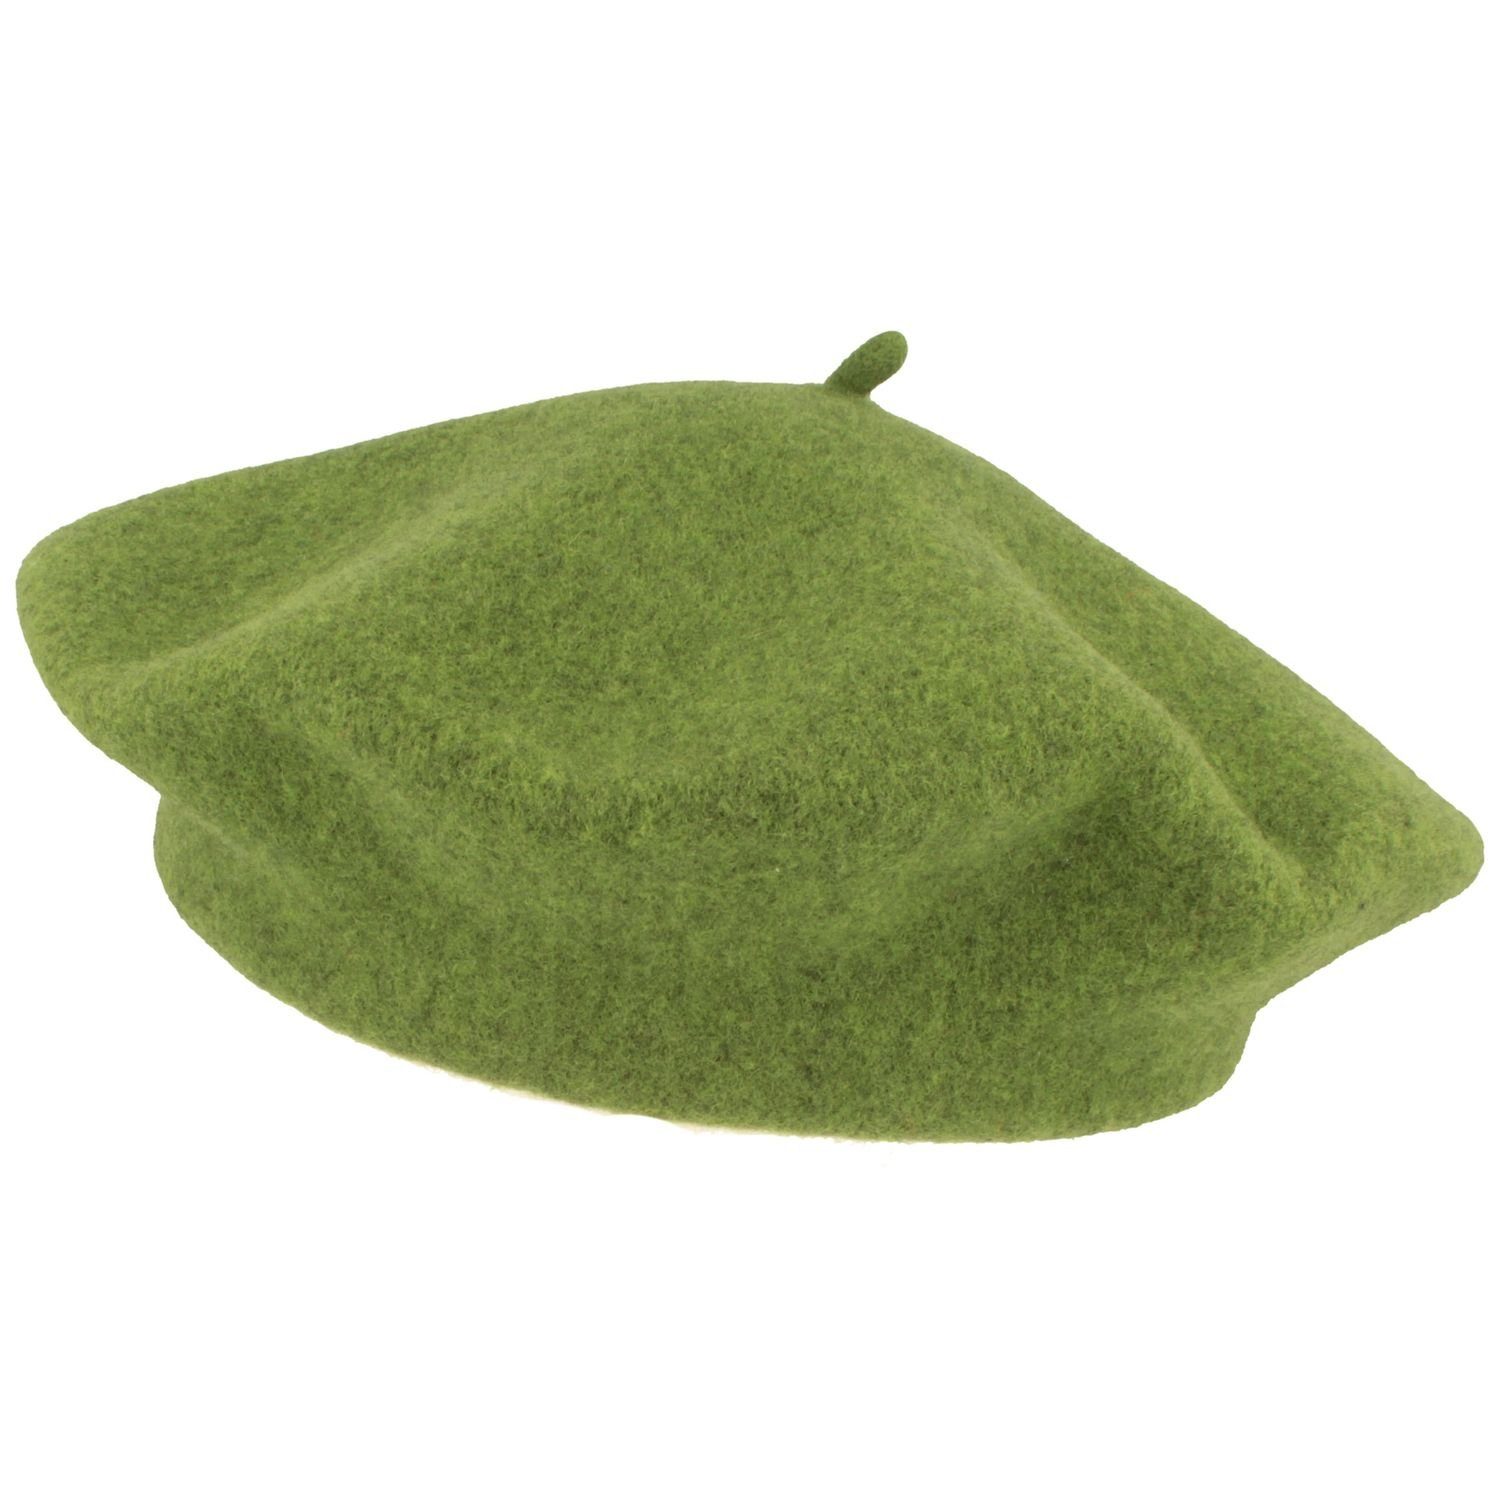 Kopka Baskenmütze klassisch aus Schurwolle meliert 100% grün